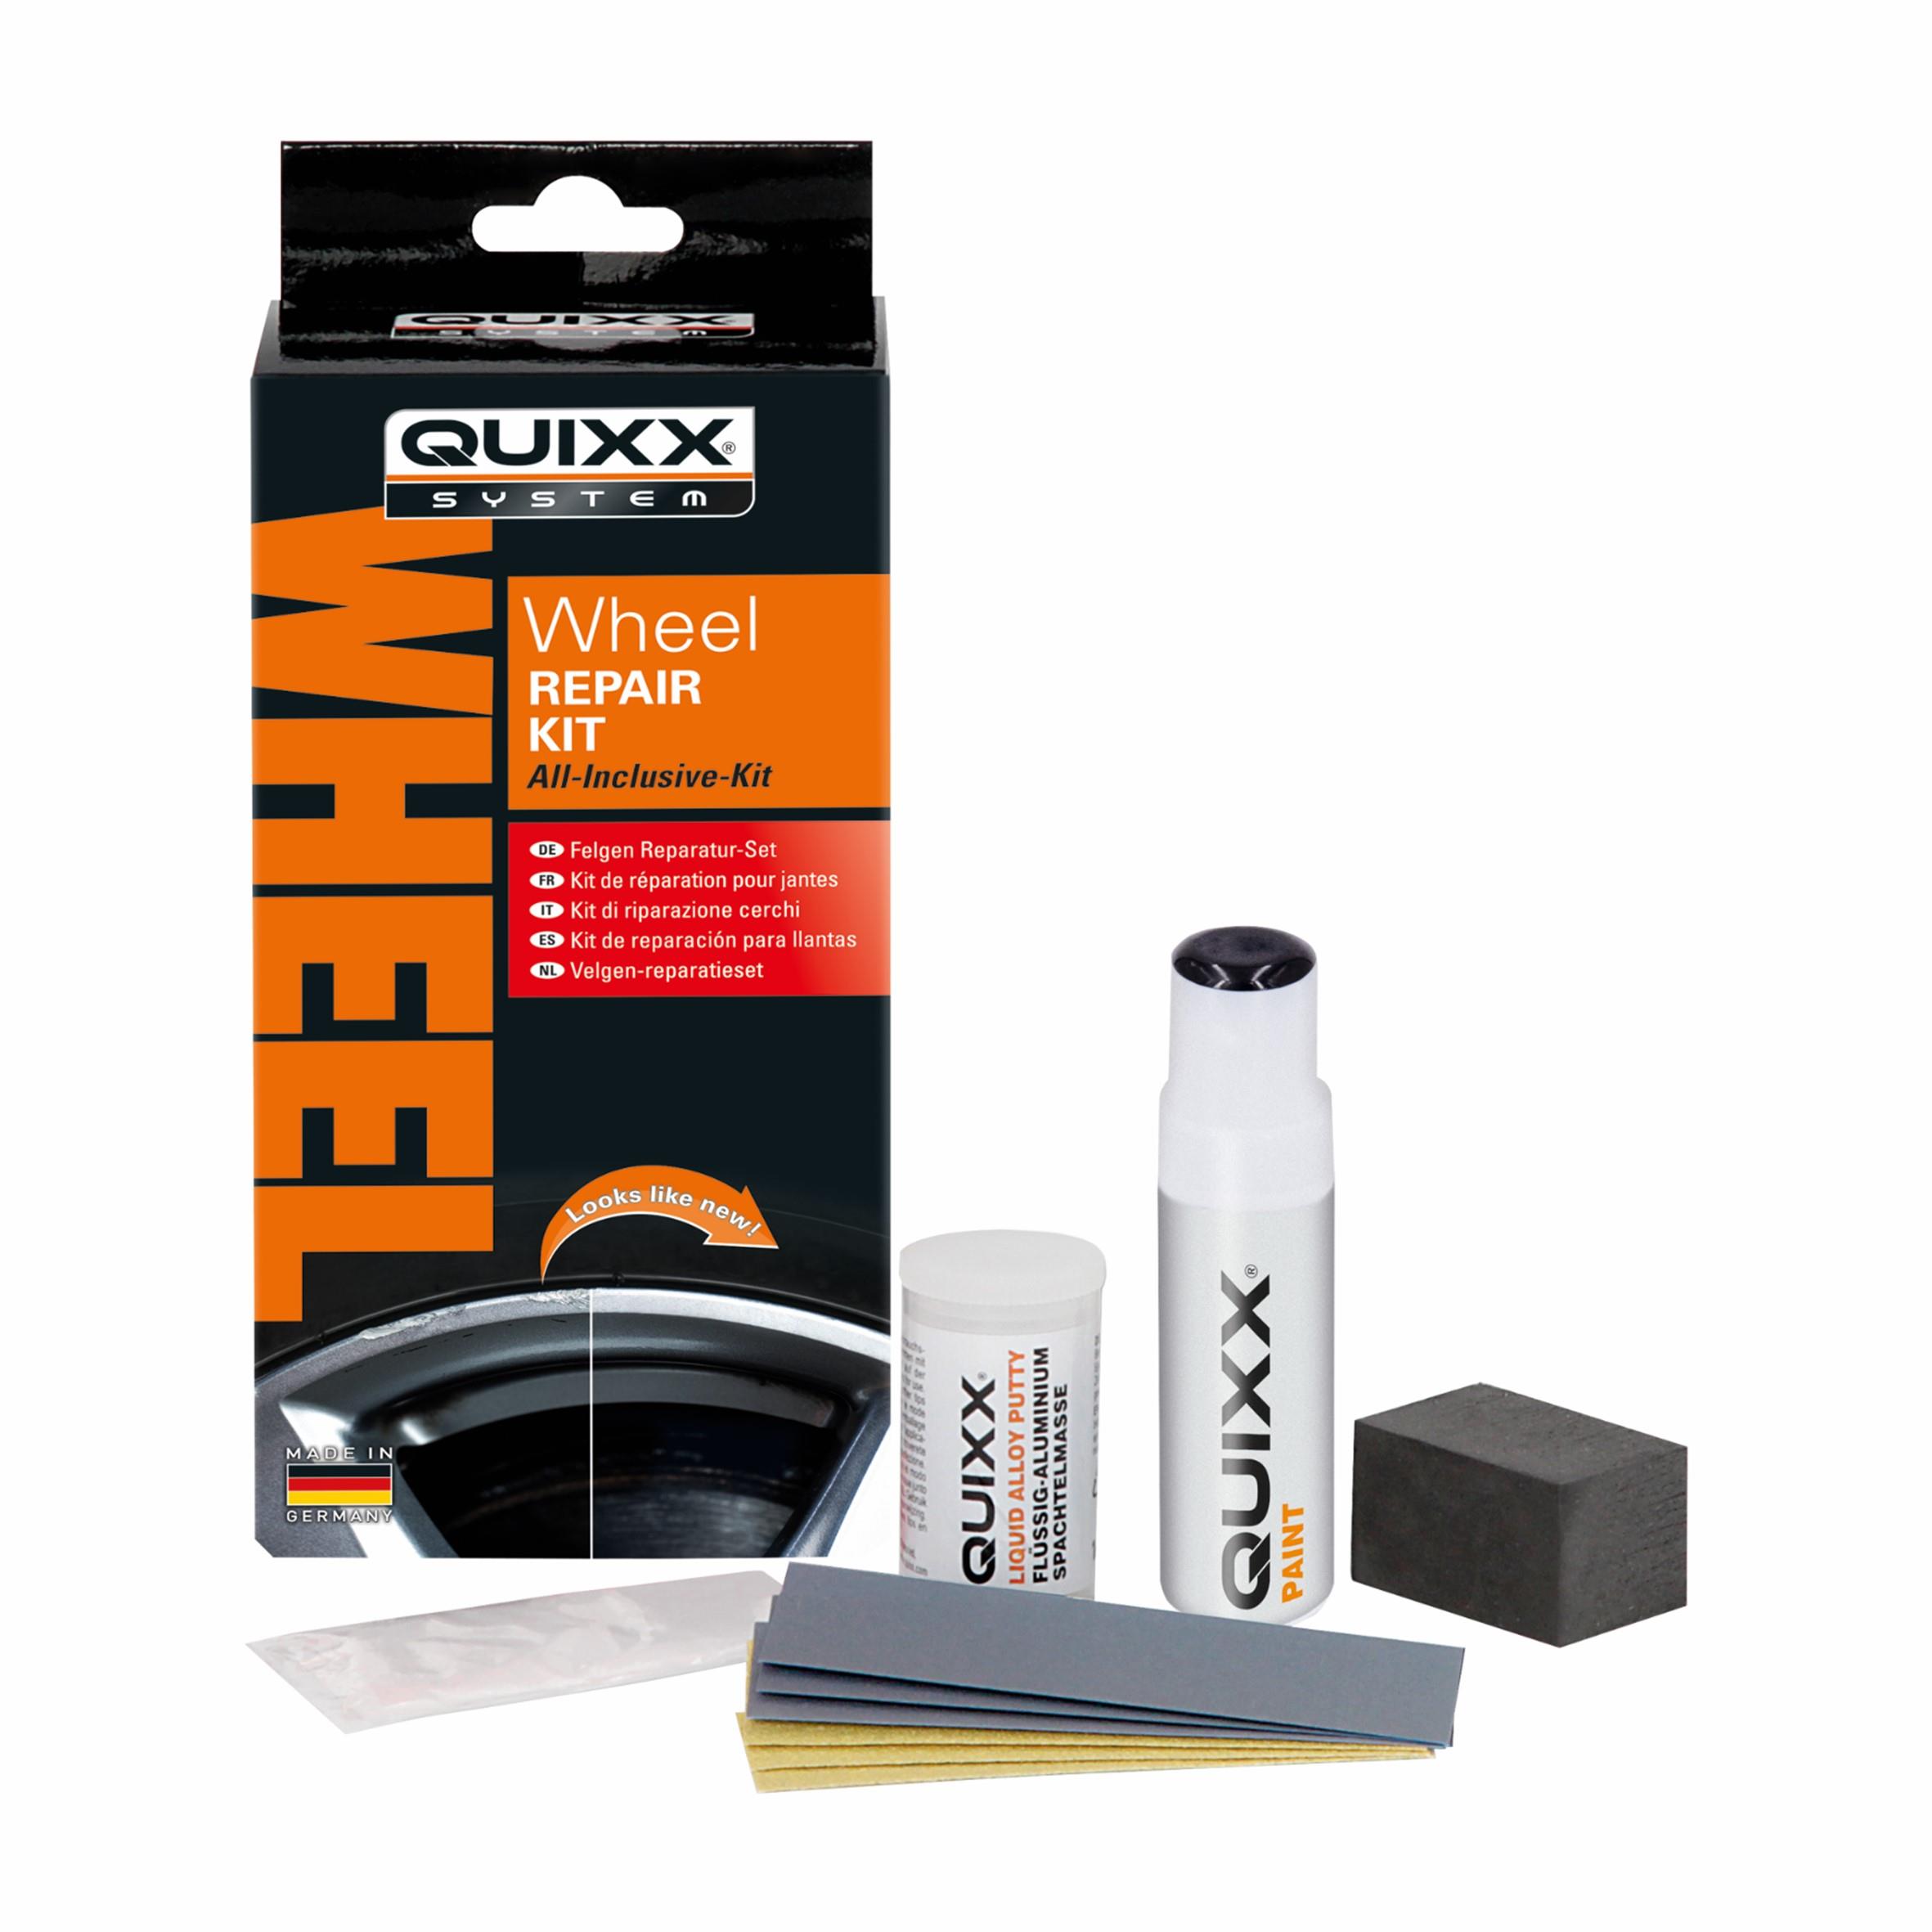 QUIXX Wheel Repair Kit